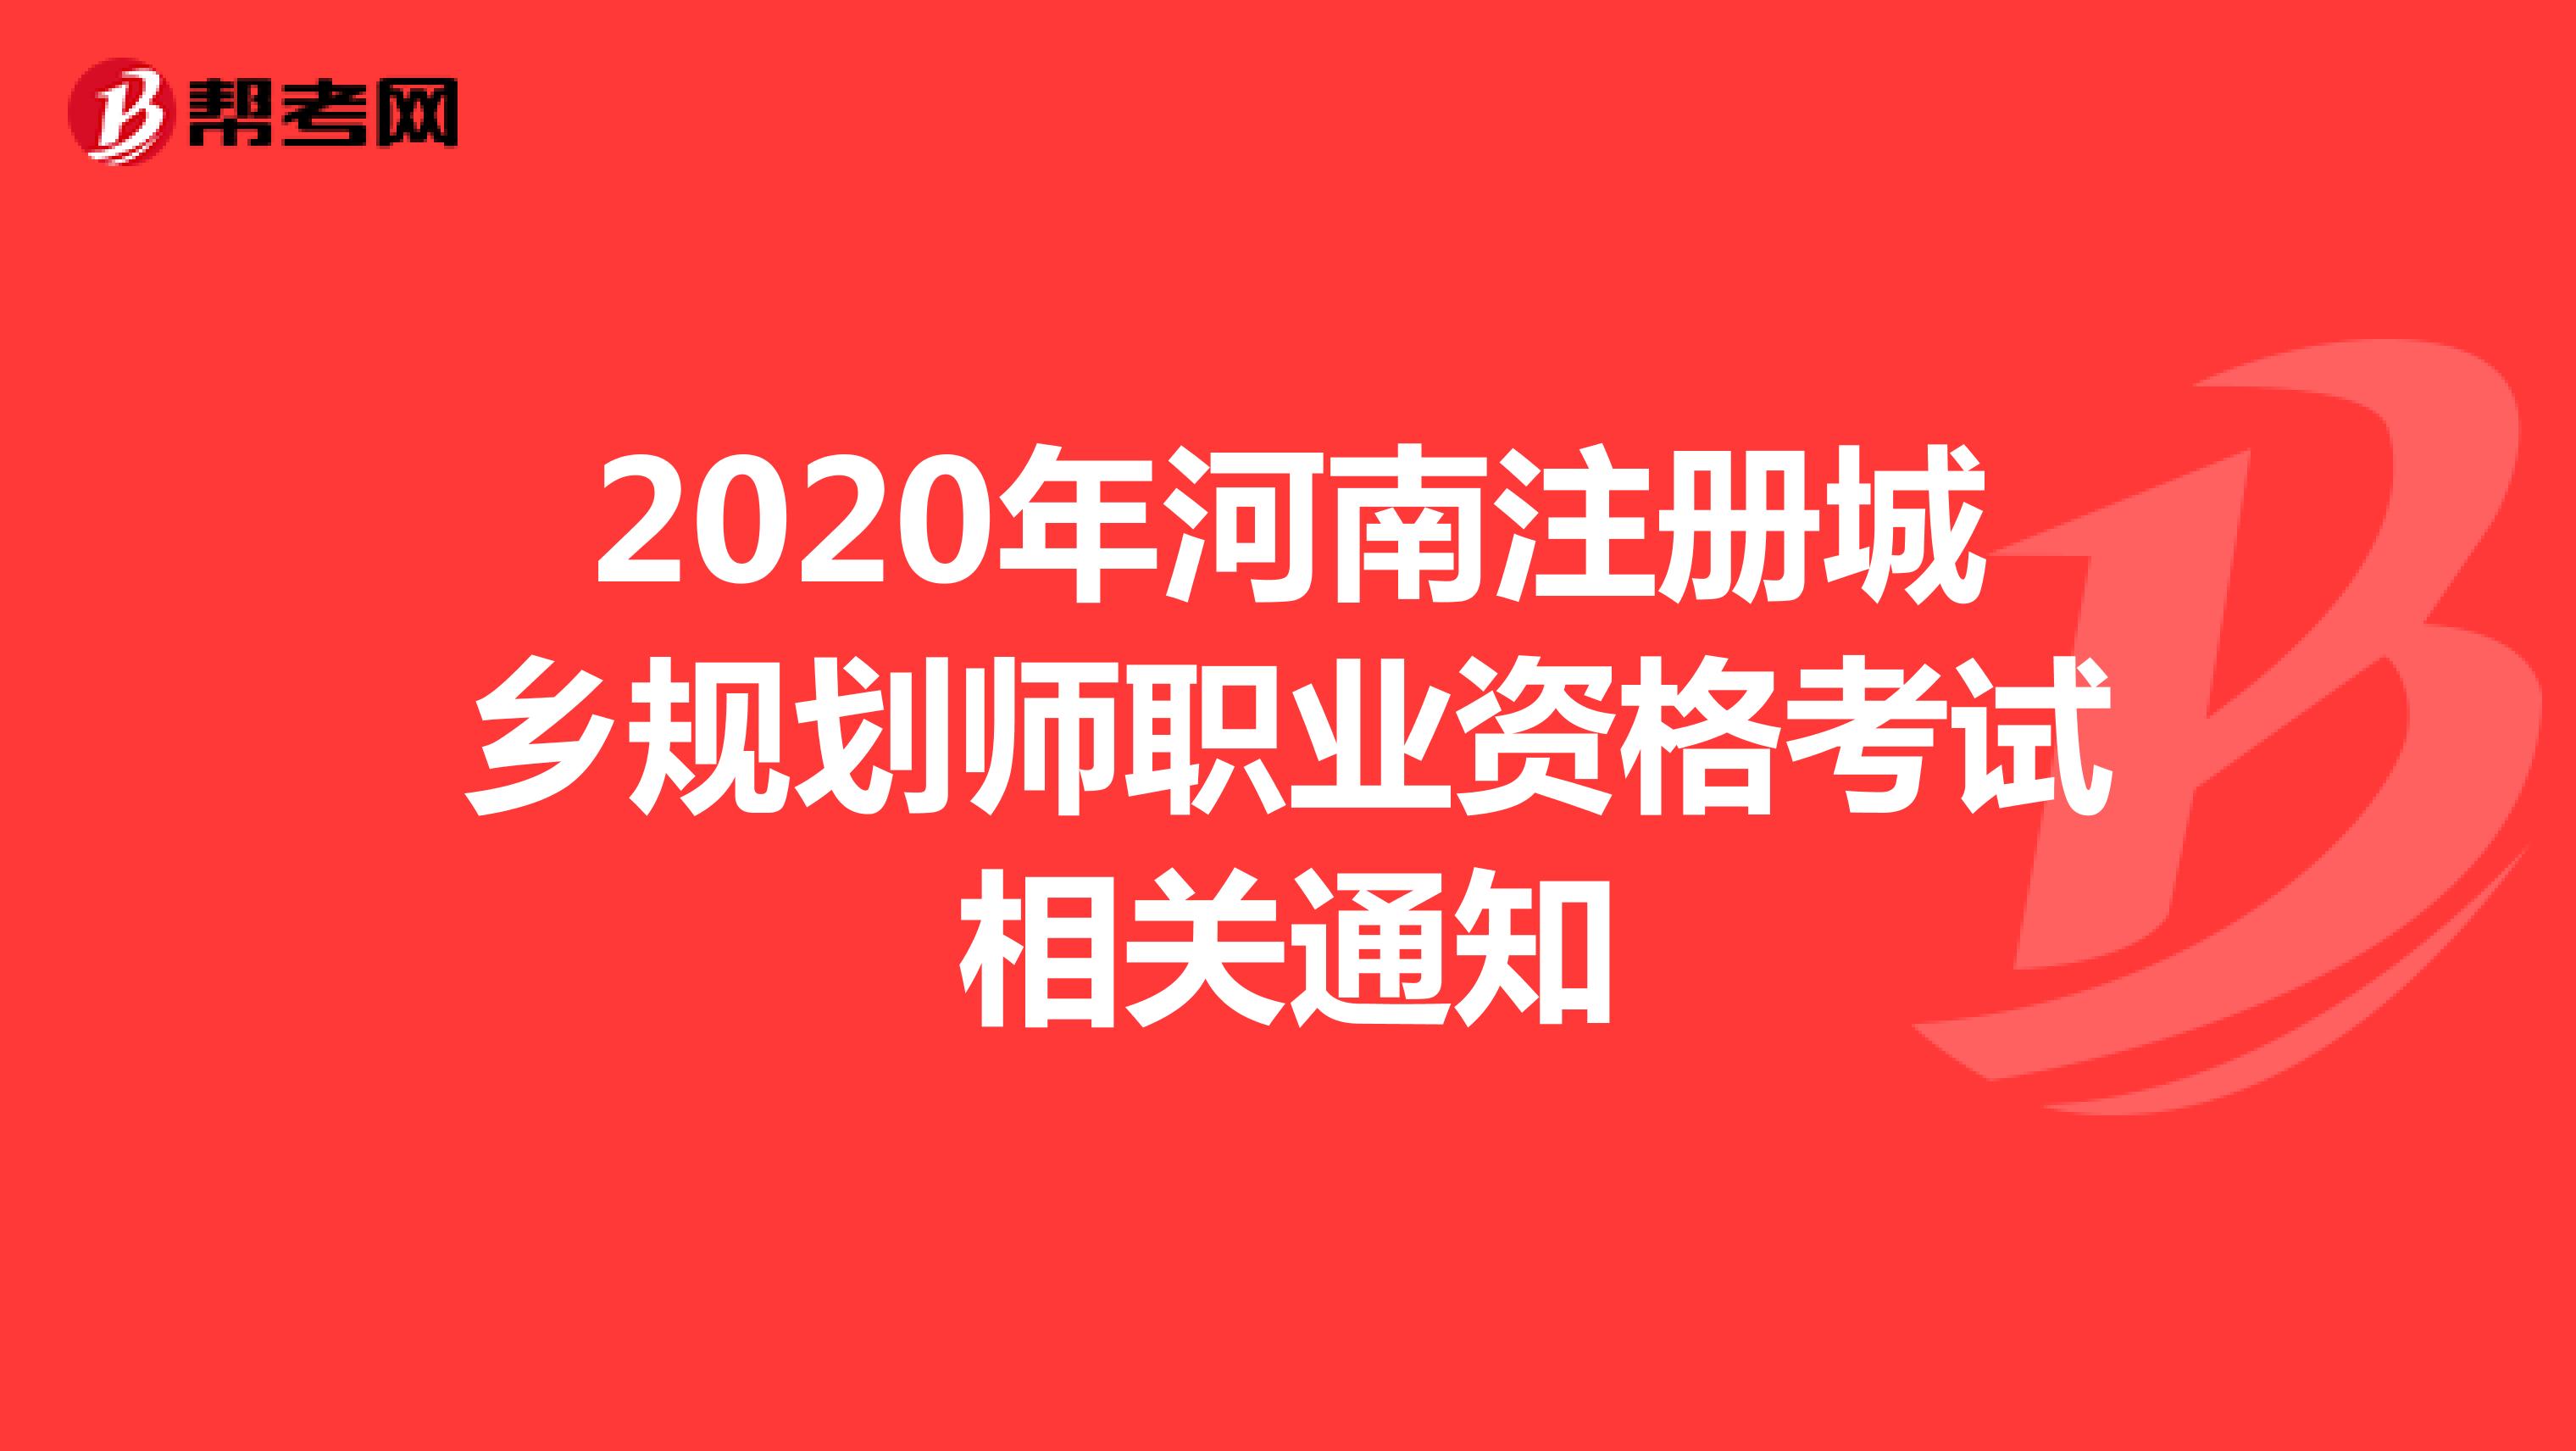 2020年河南注册城乡规划师职业资格考试相关通知